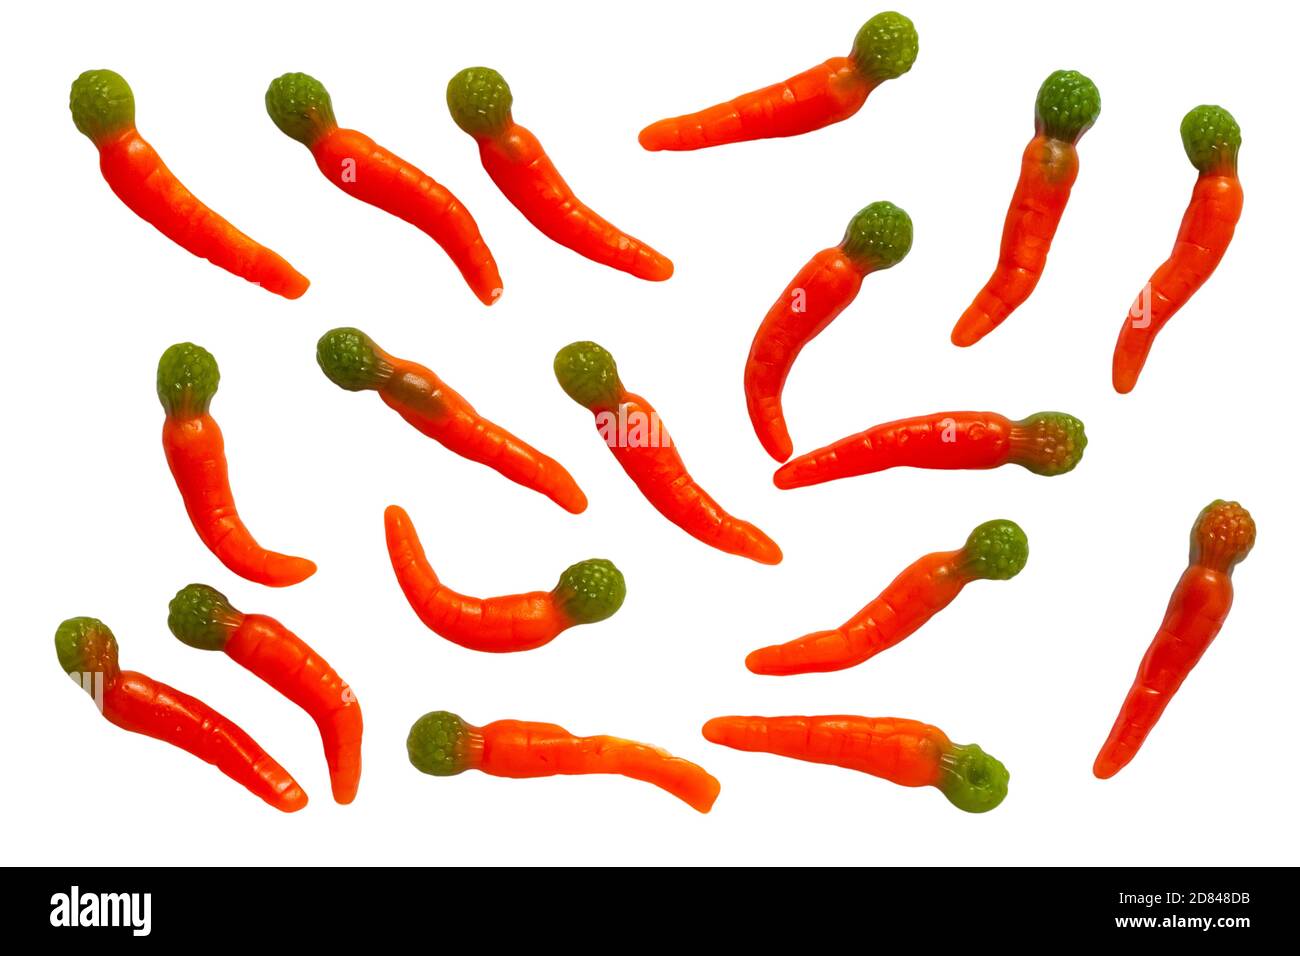 Le carote gummy di Wilko isolate su sfondo bianco - frutta gummy aromatizzare i dolci a forma di carota Foto Stock